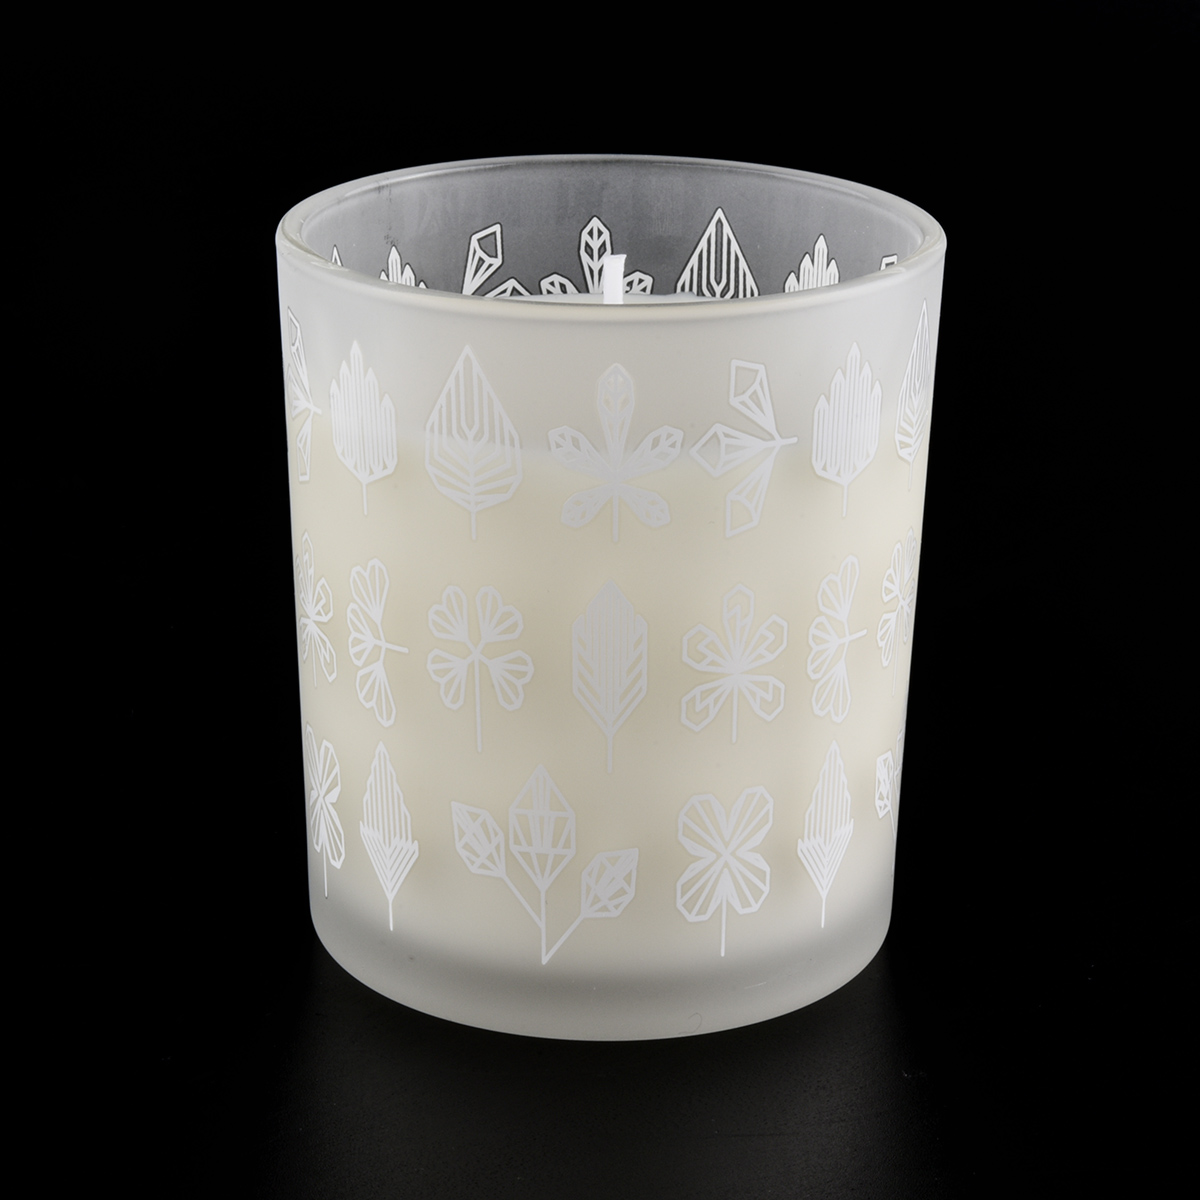 Jar kaca silinder putih buram untuk pembuatan lilin